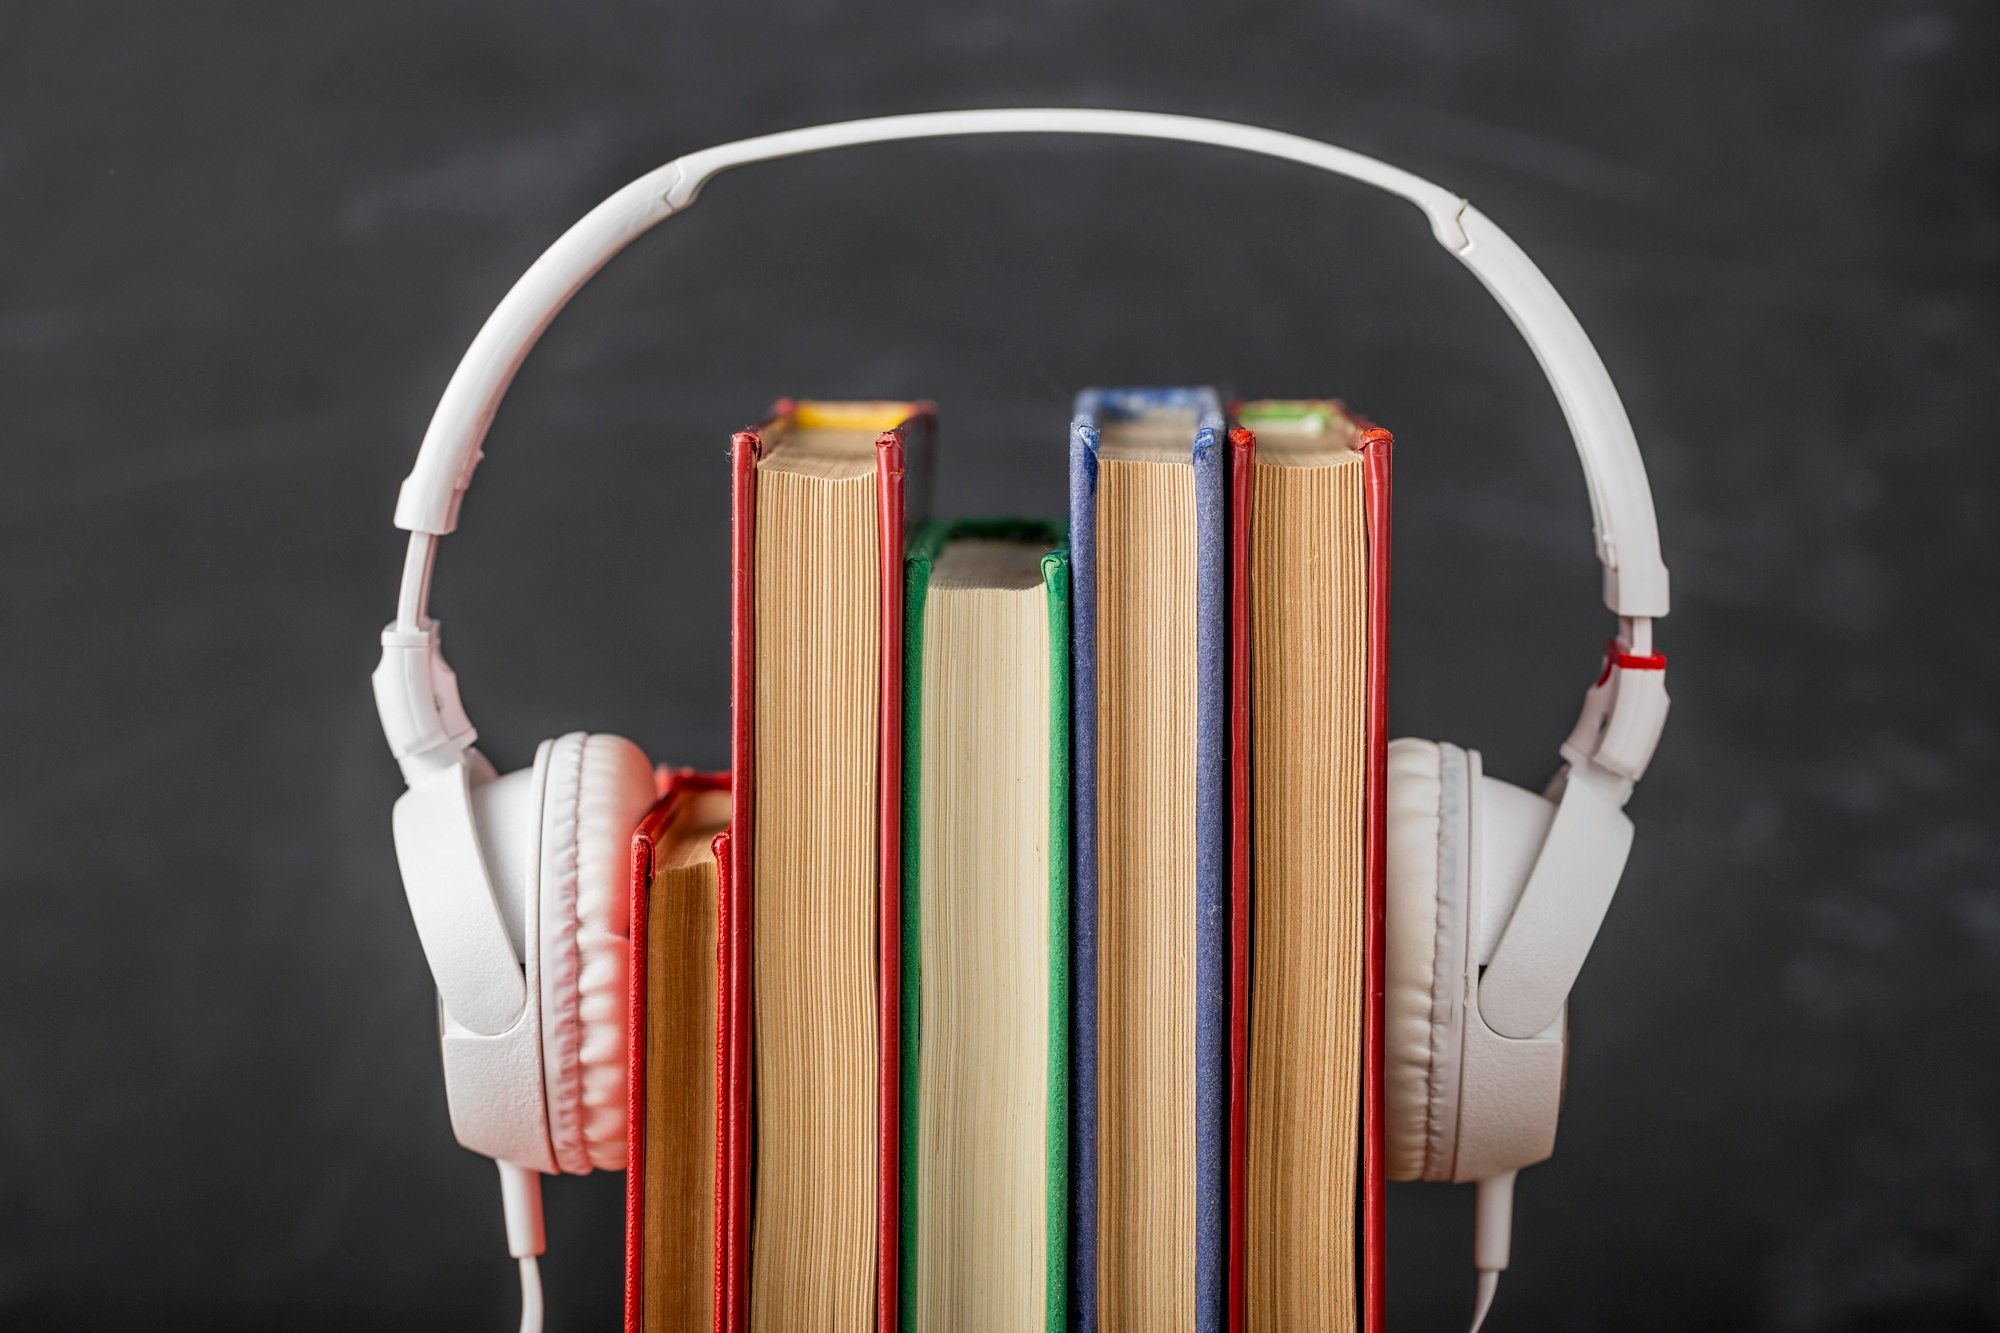 Imagem de livros em volta de um fone de ouido para simbolizar os livros sobre música